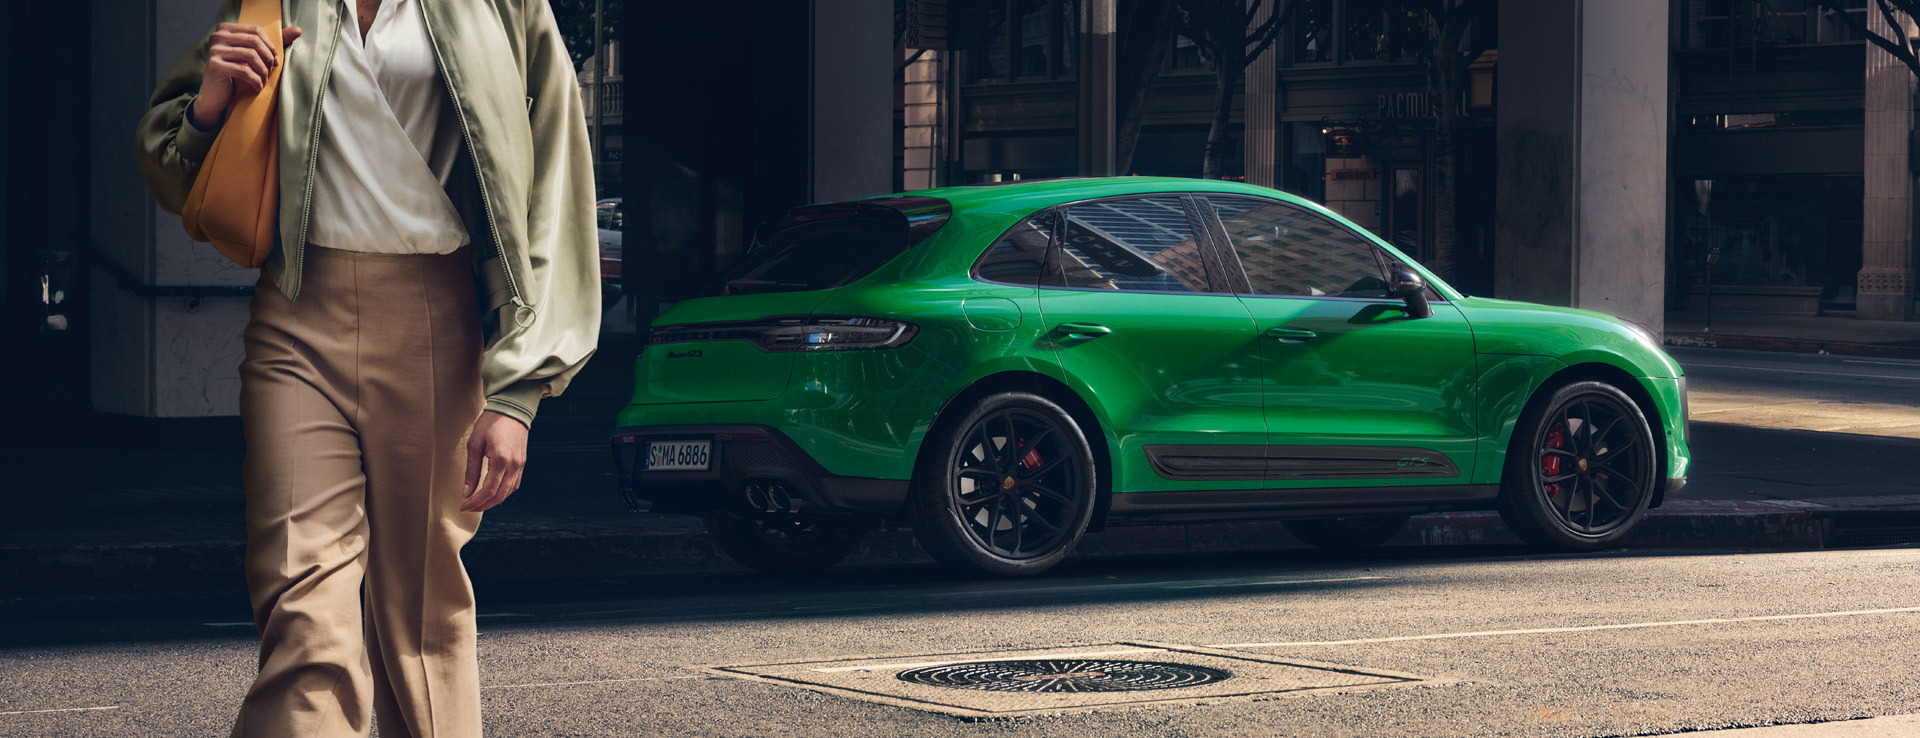 Green Porsche Macan Gts Wallpapers